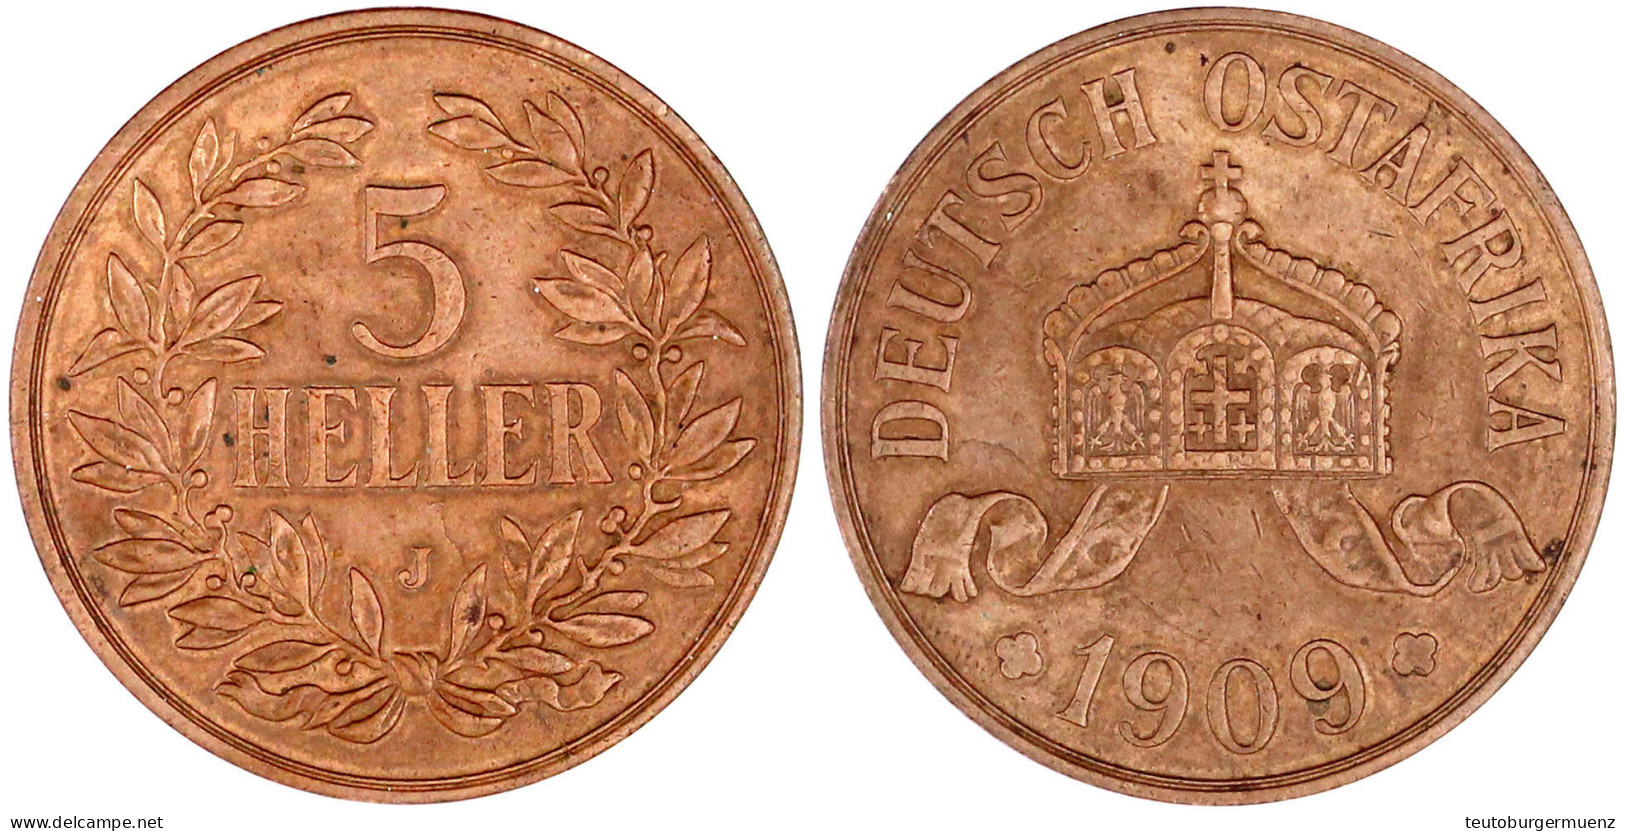 5 Heller 1909 J. Größte Deutsche Kupfermünze. Vorzüglich, Min. Kratzer. Jaeger N 717. - Deutsch-Ostafrika